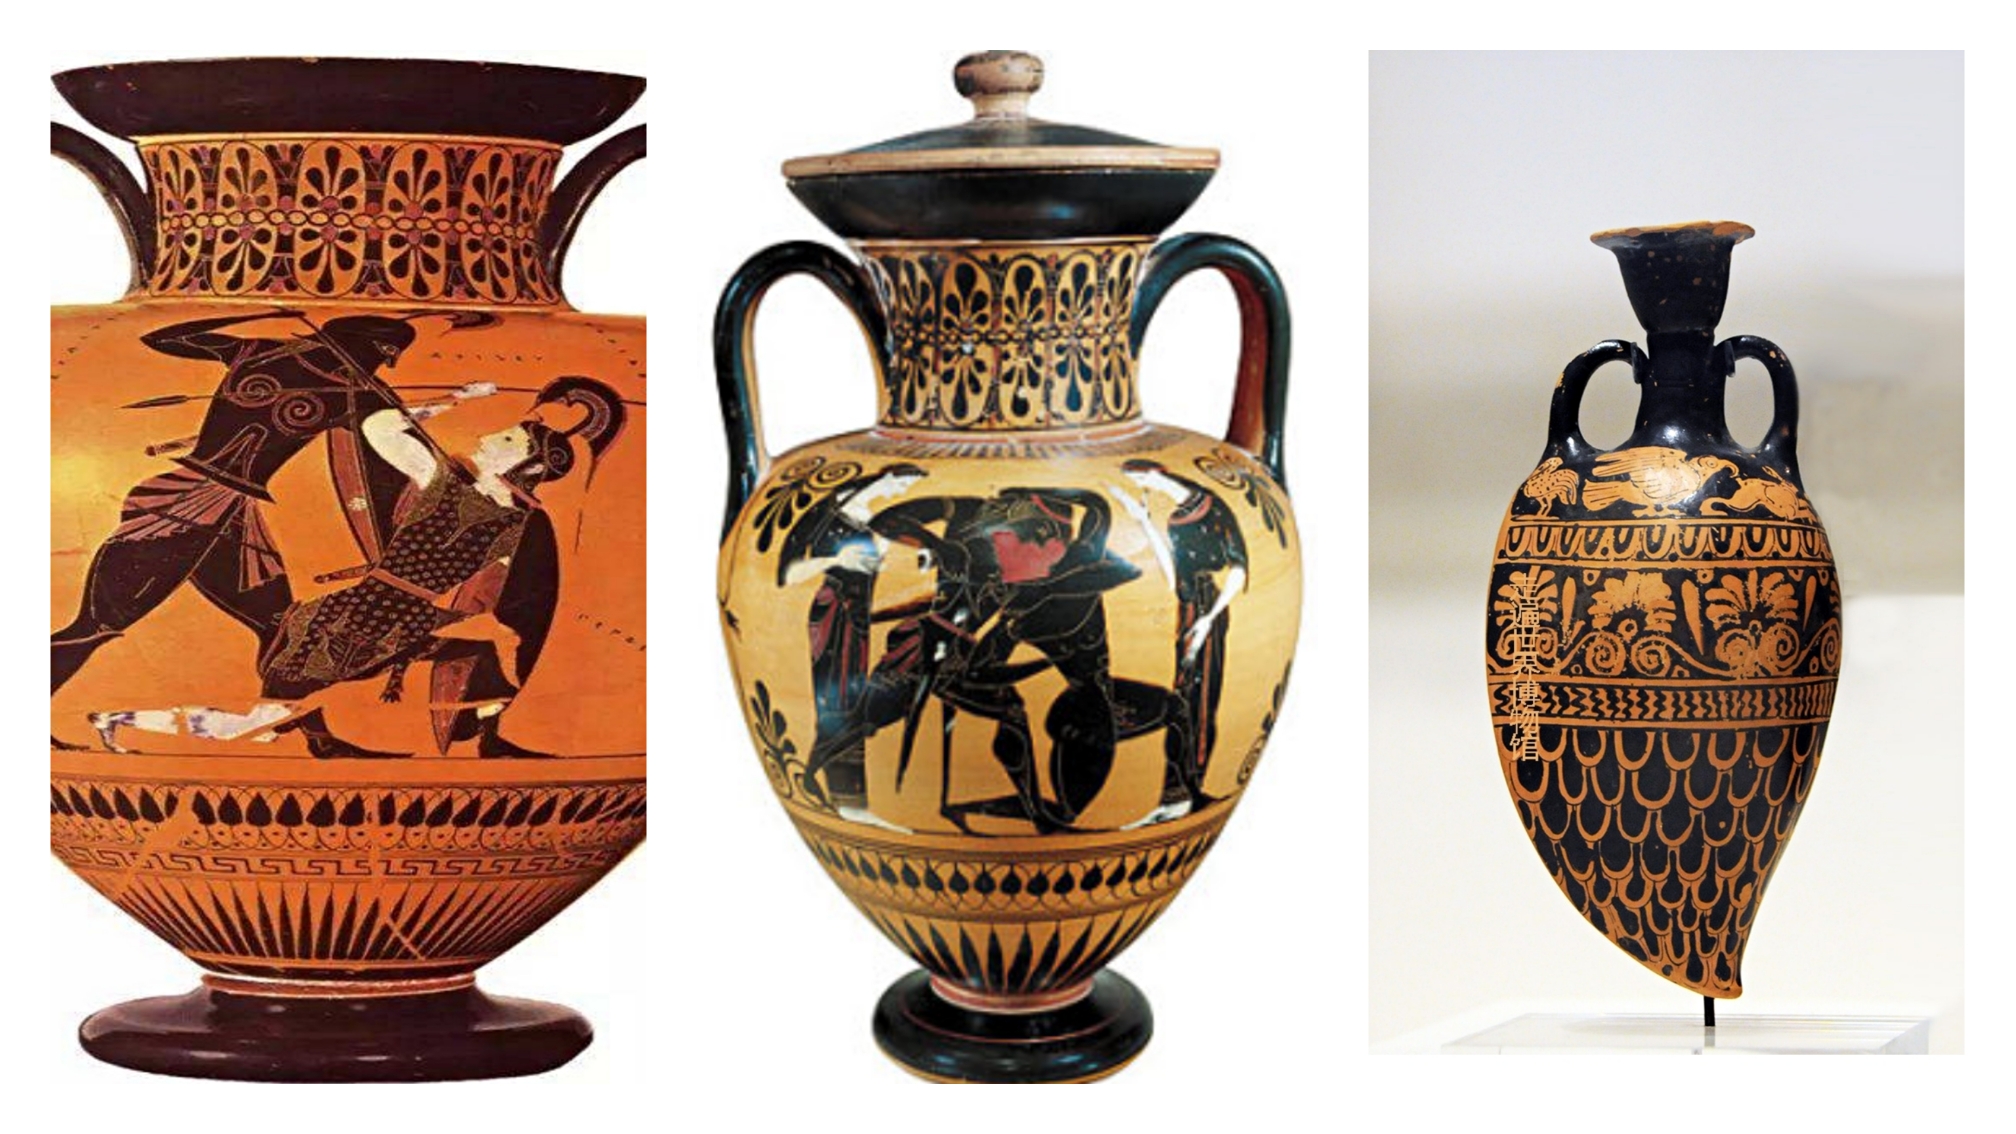 运用版画的形式表现古希腊陶器,体验版画创作乐趣